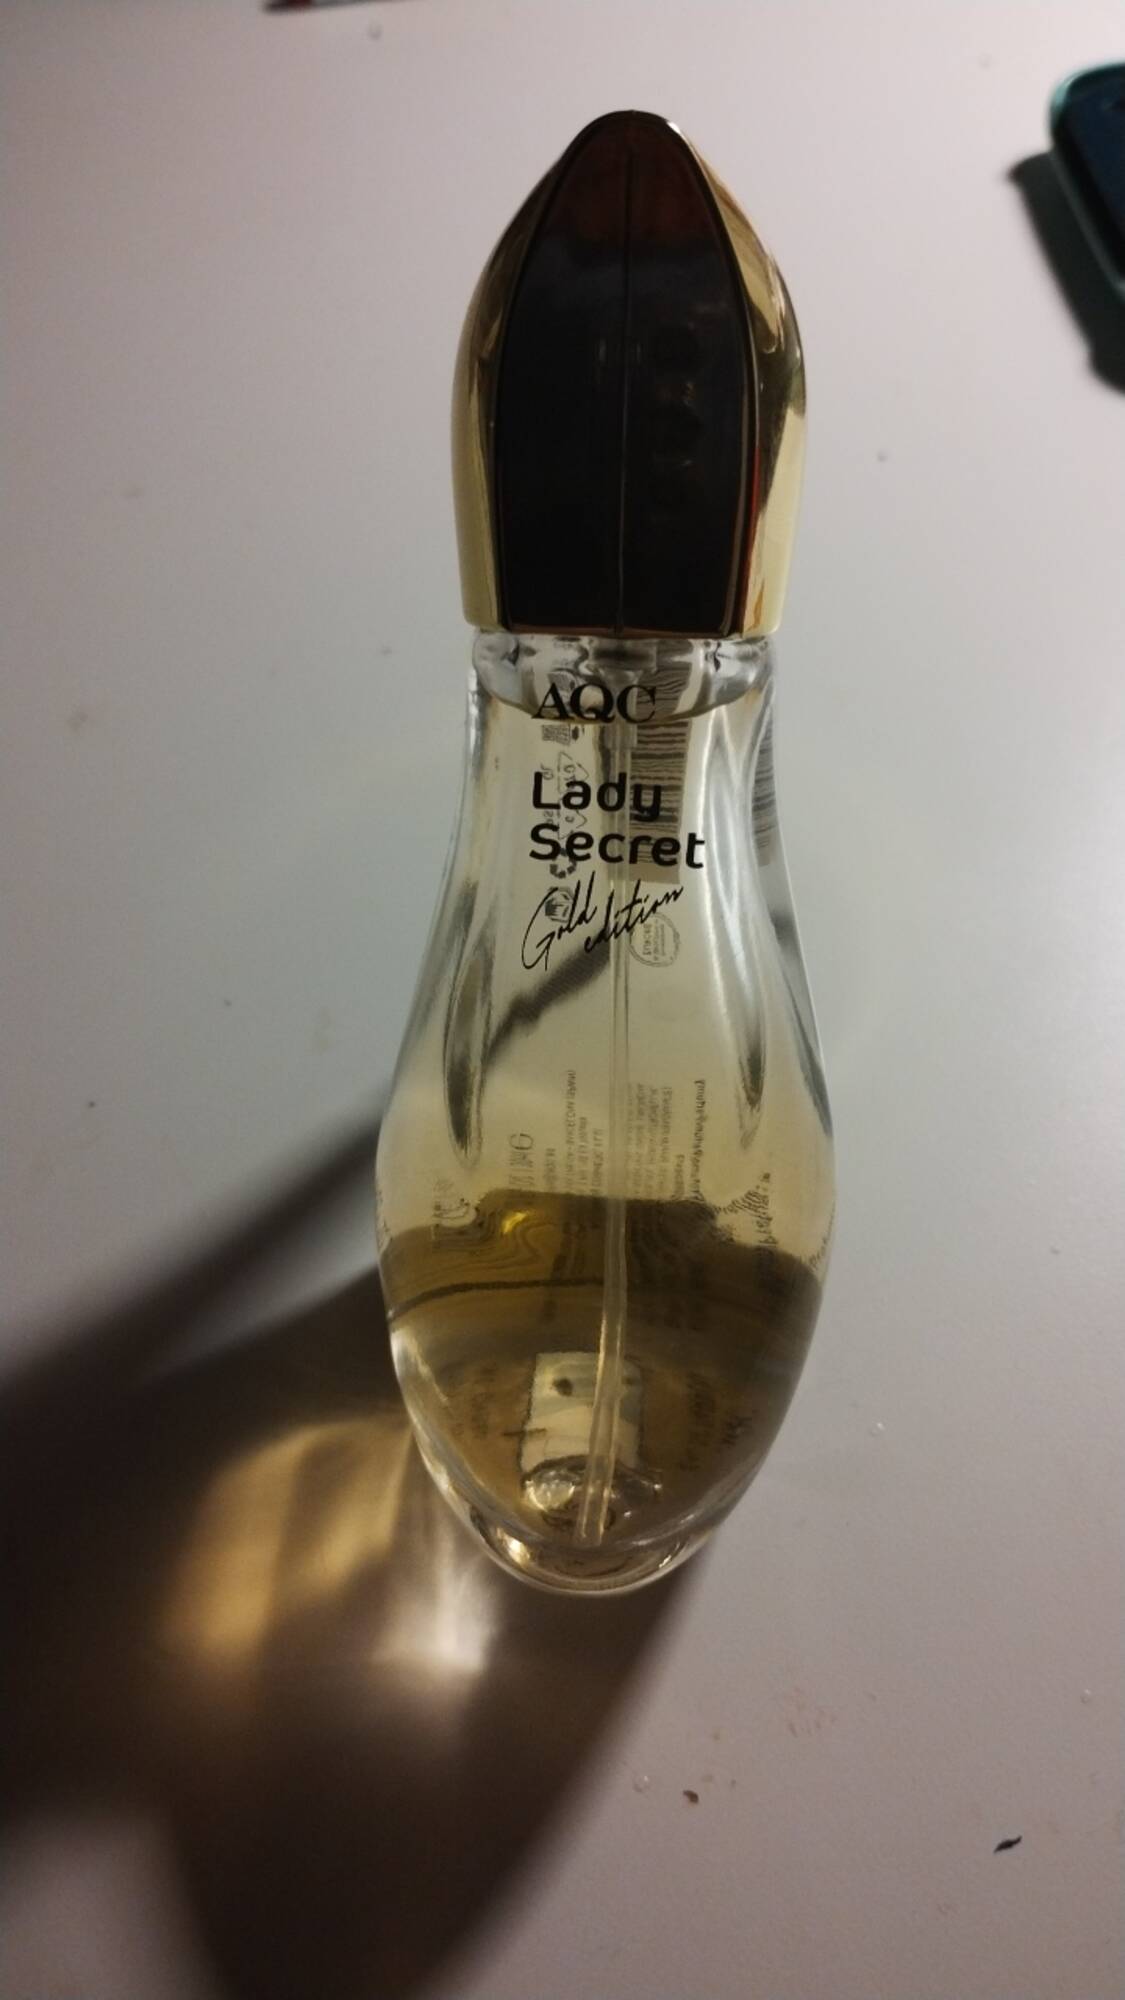 AQUARIUS COSMETIC - Lady secret - Parfum